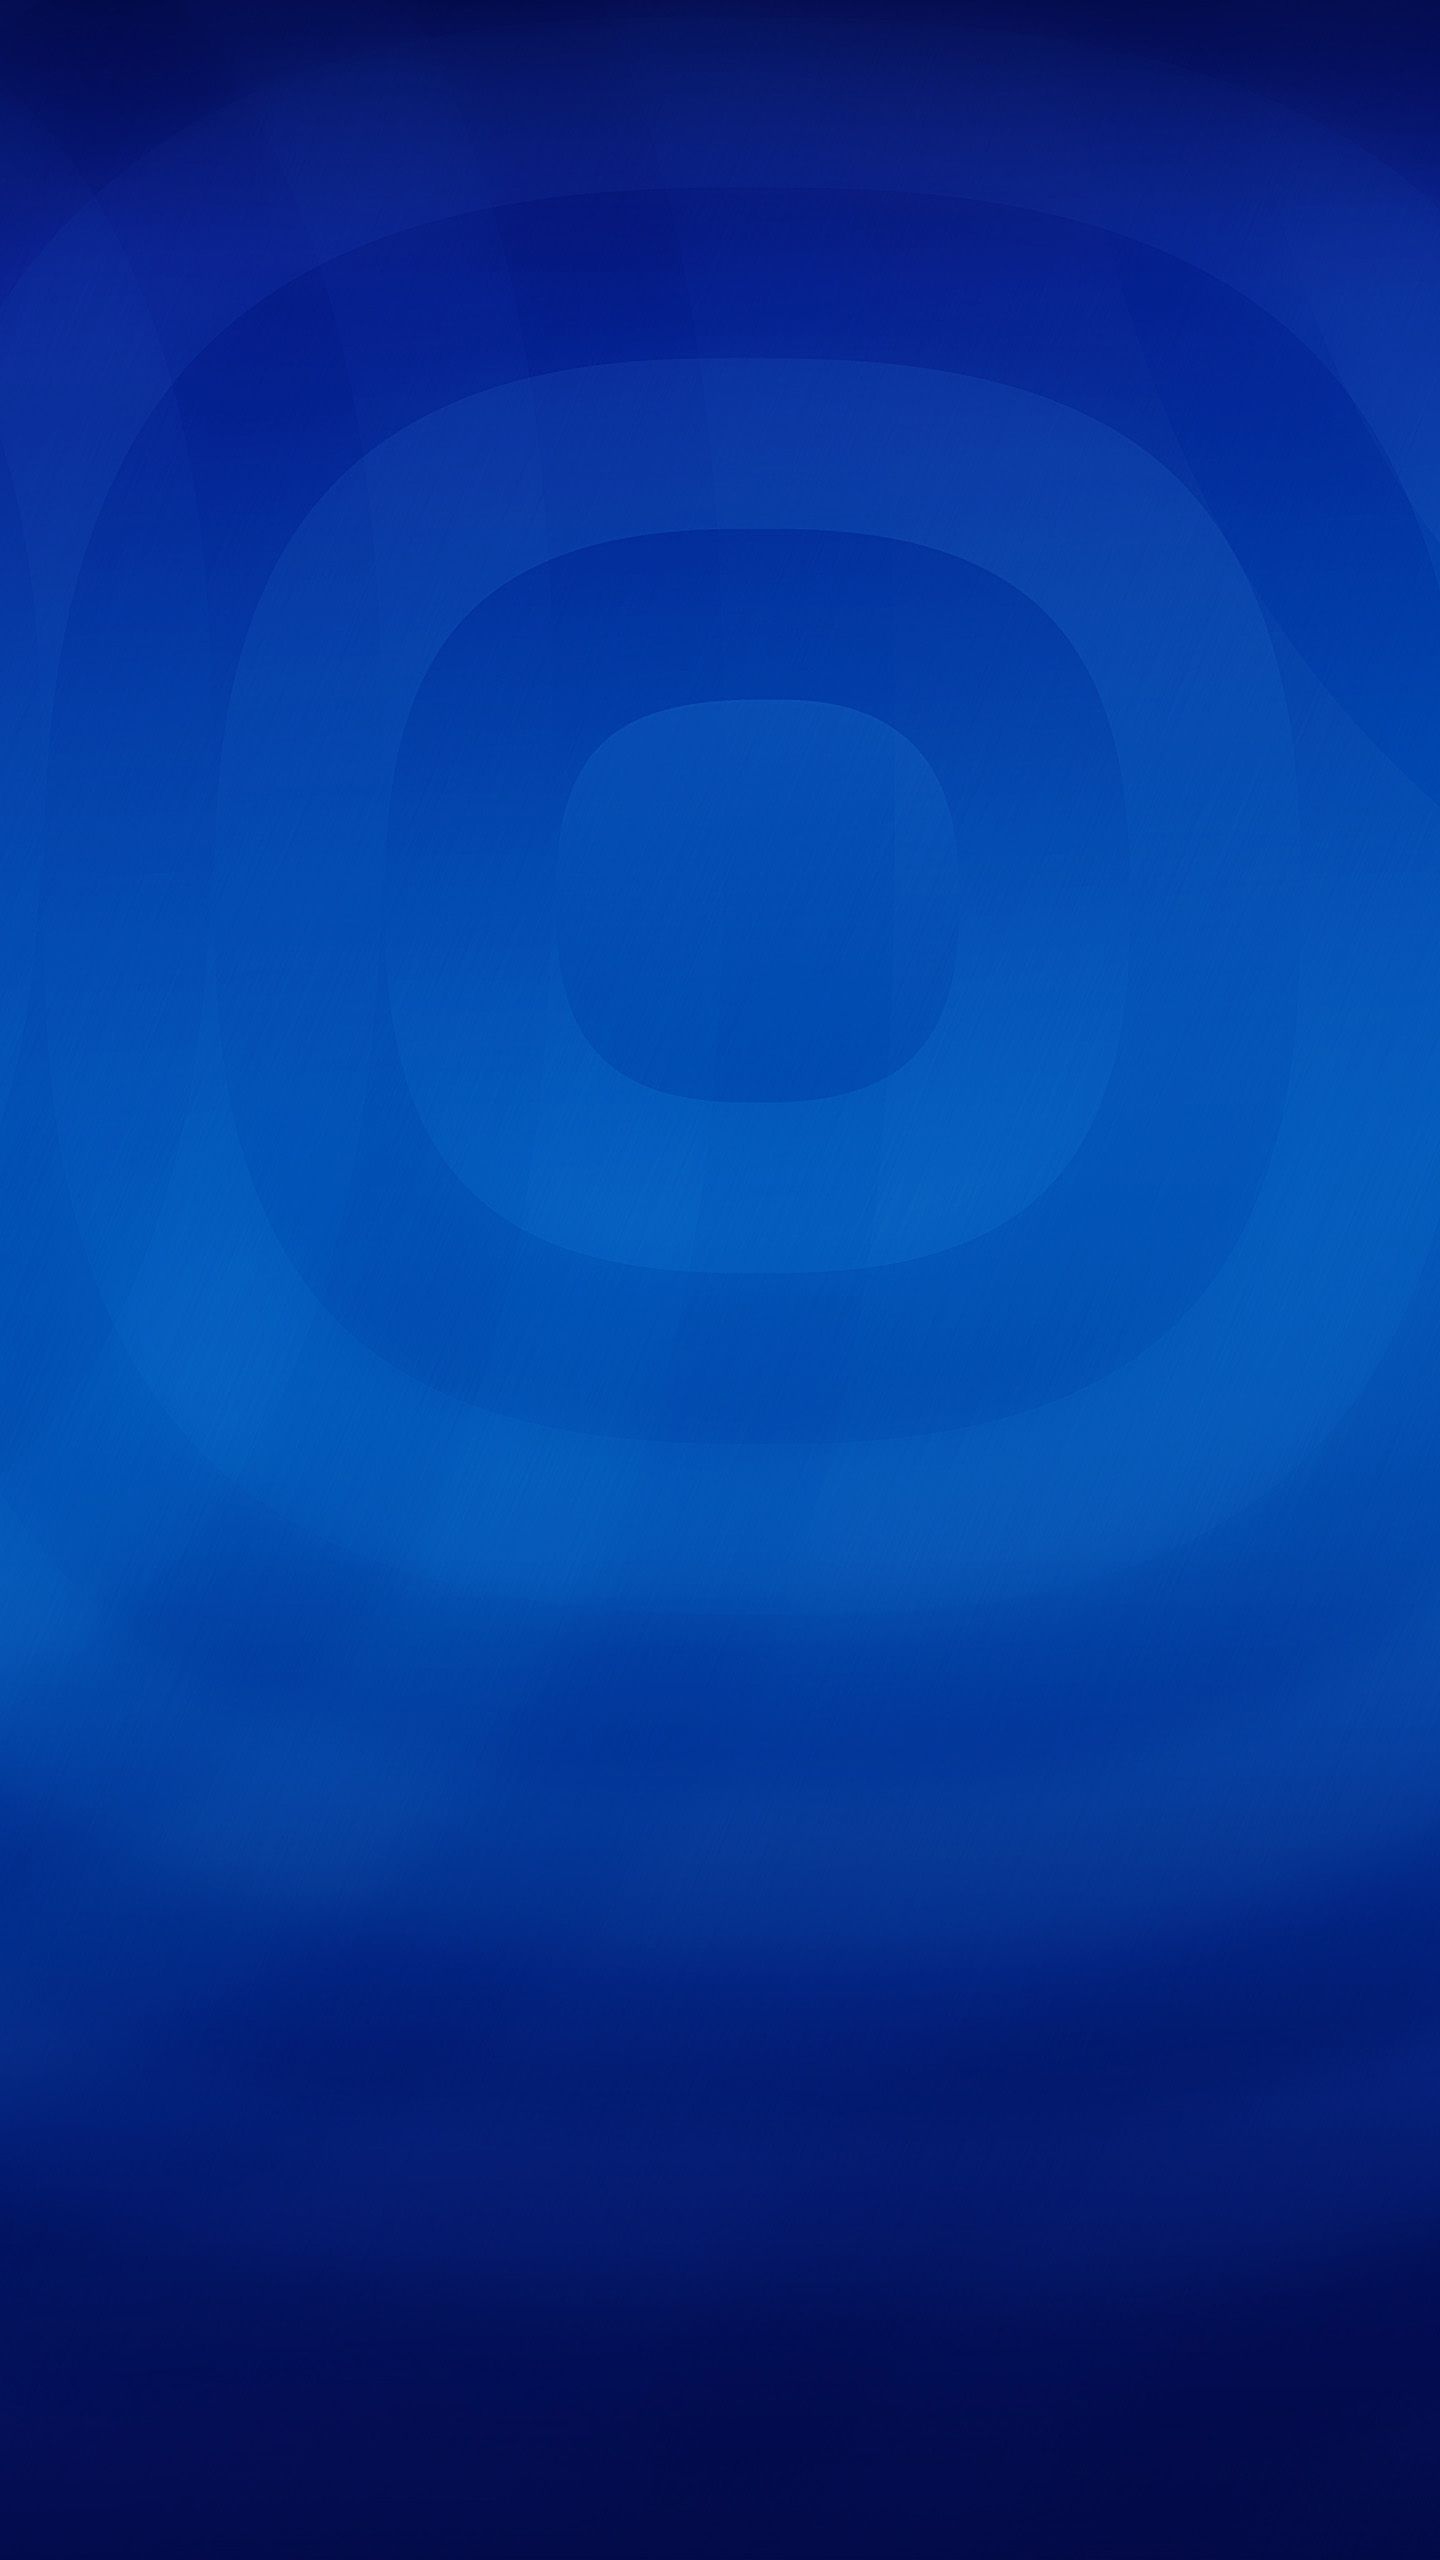 Papel pintado abstracto azul simple Galaxy S6 | Fondo de pantalla azul! en 2019